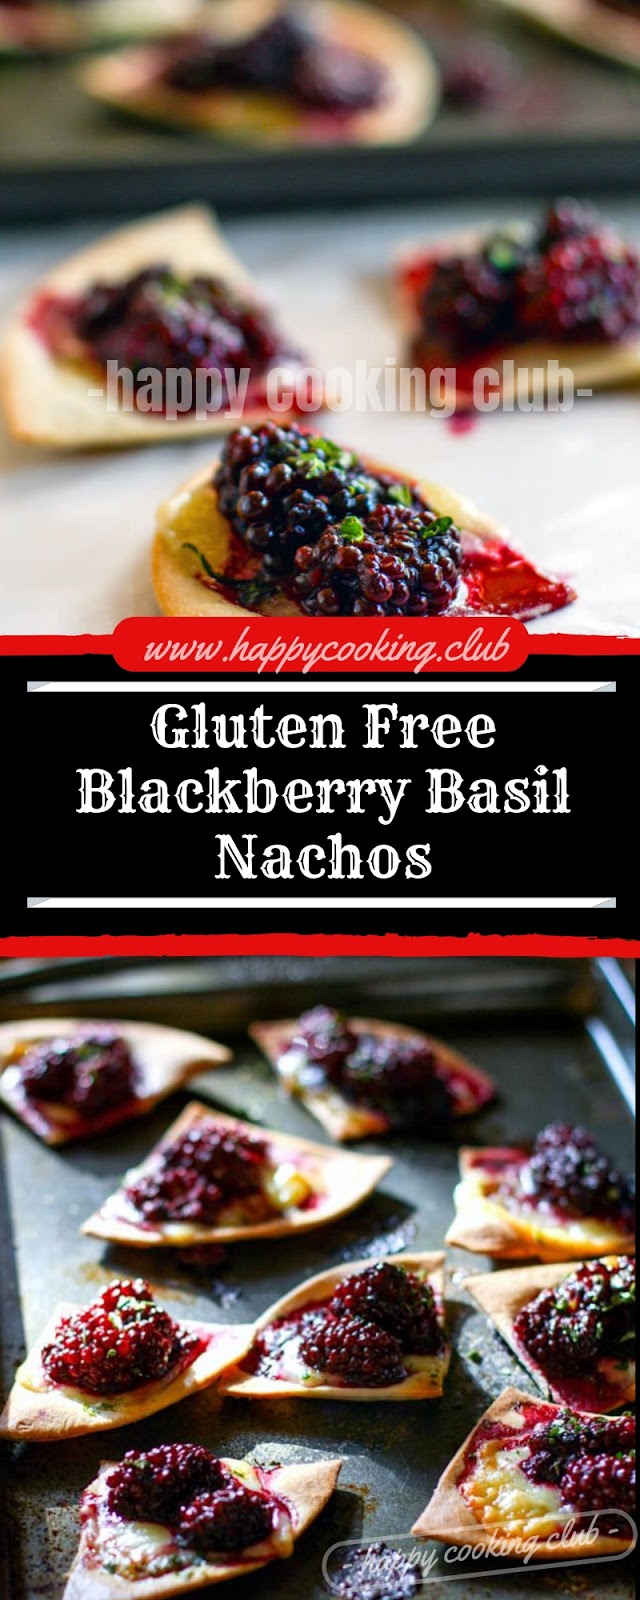 Gluten Free Blackberry Basil Nachos